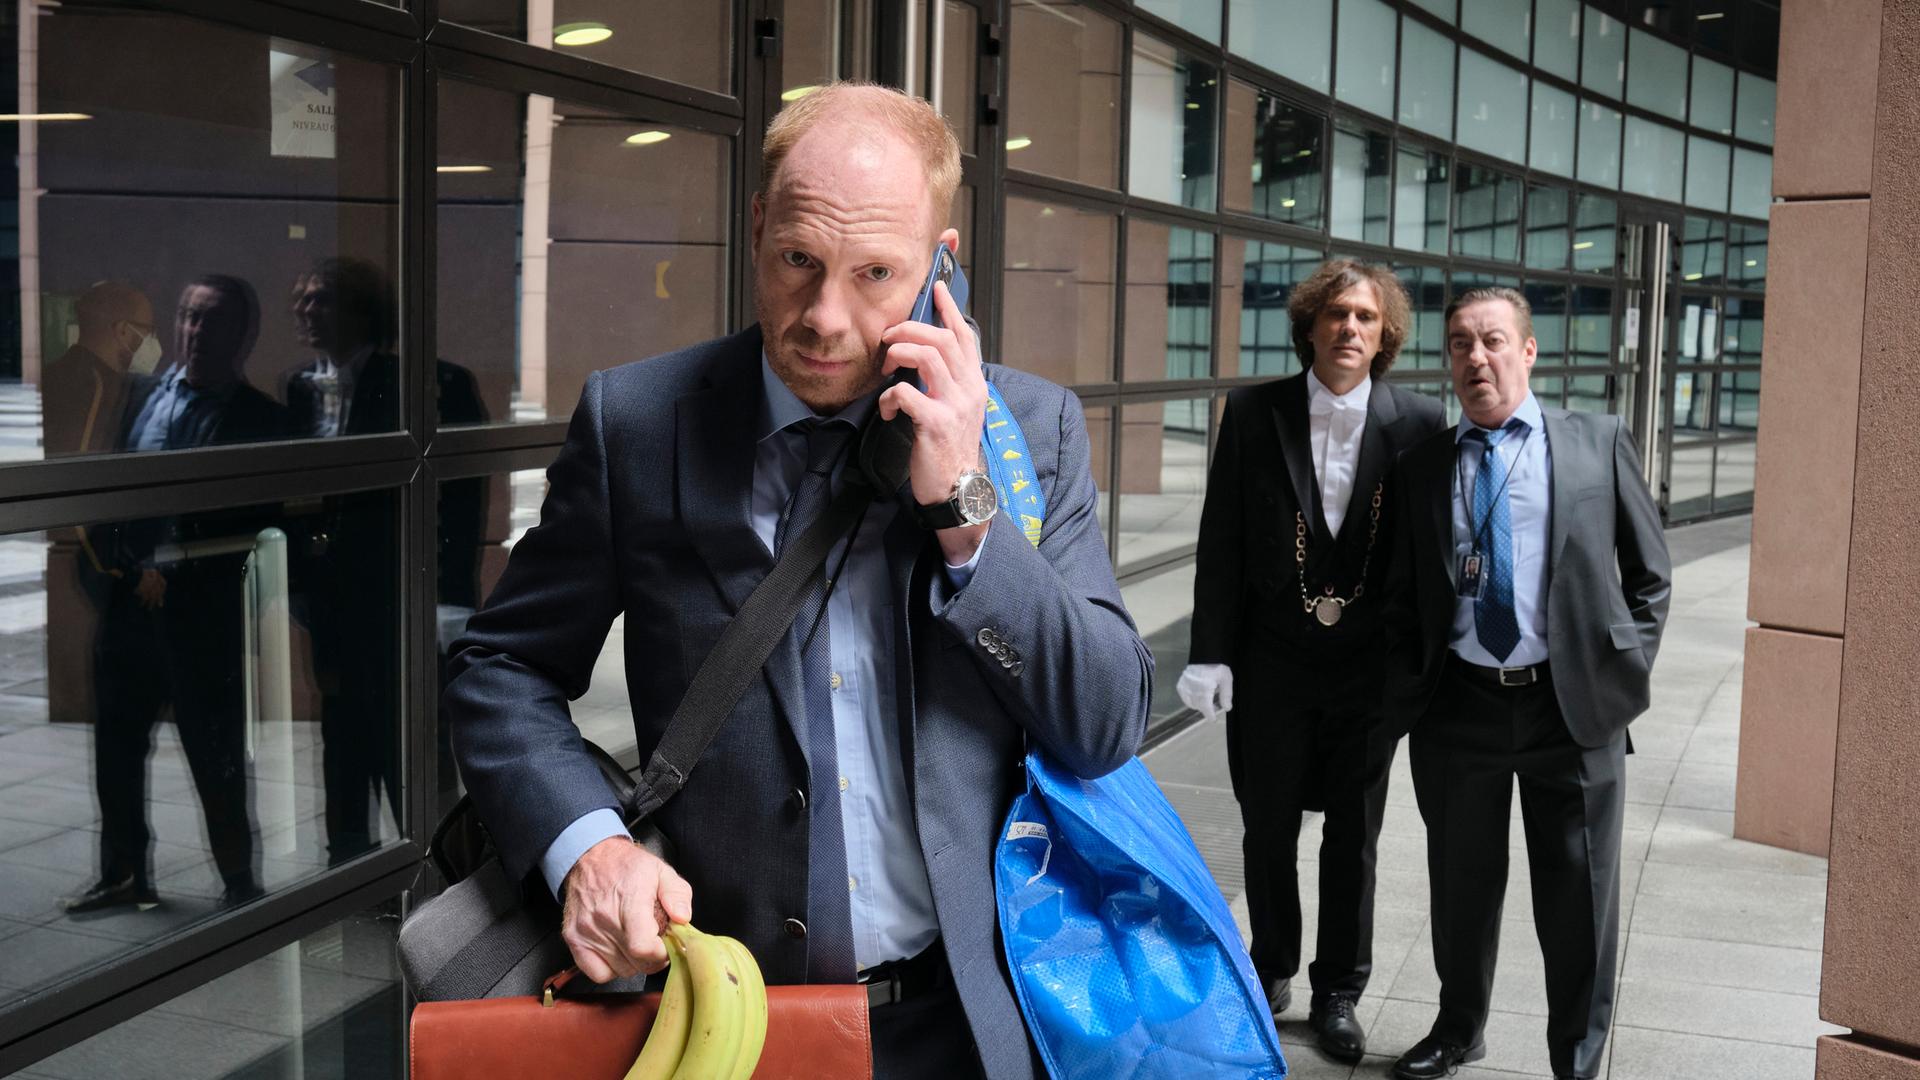 Ein Szenenfoto aus der ARD-/WDR-Serie "Parlament": Der Schauspieler Johann von Bülow steht im Vordergrund und telefoniert mit seinem Smartphone, während er eine Bürotasche hält und eine blaue IKEA-Tasche über der Schulter trägt, Seine rechte Hand hält zudem ein Bündel mit Bananen. Im Hintergrund stehen zwei Männer und beobachten ihn. 